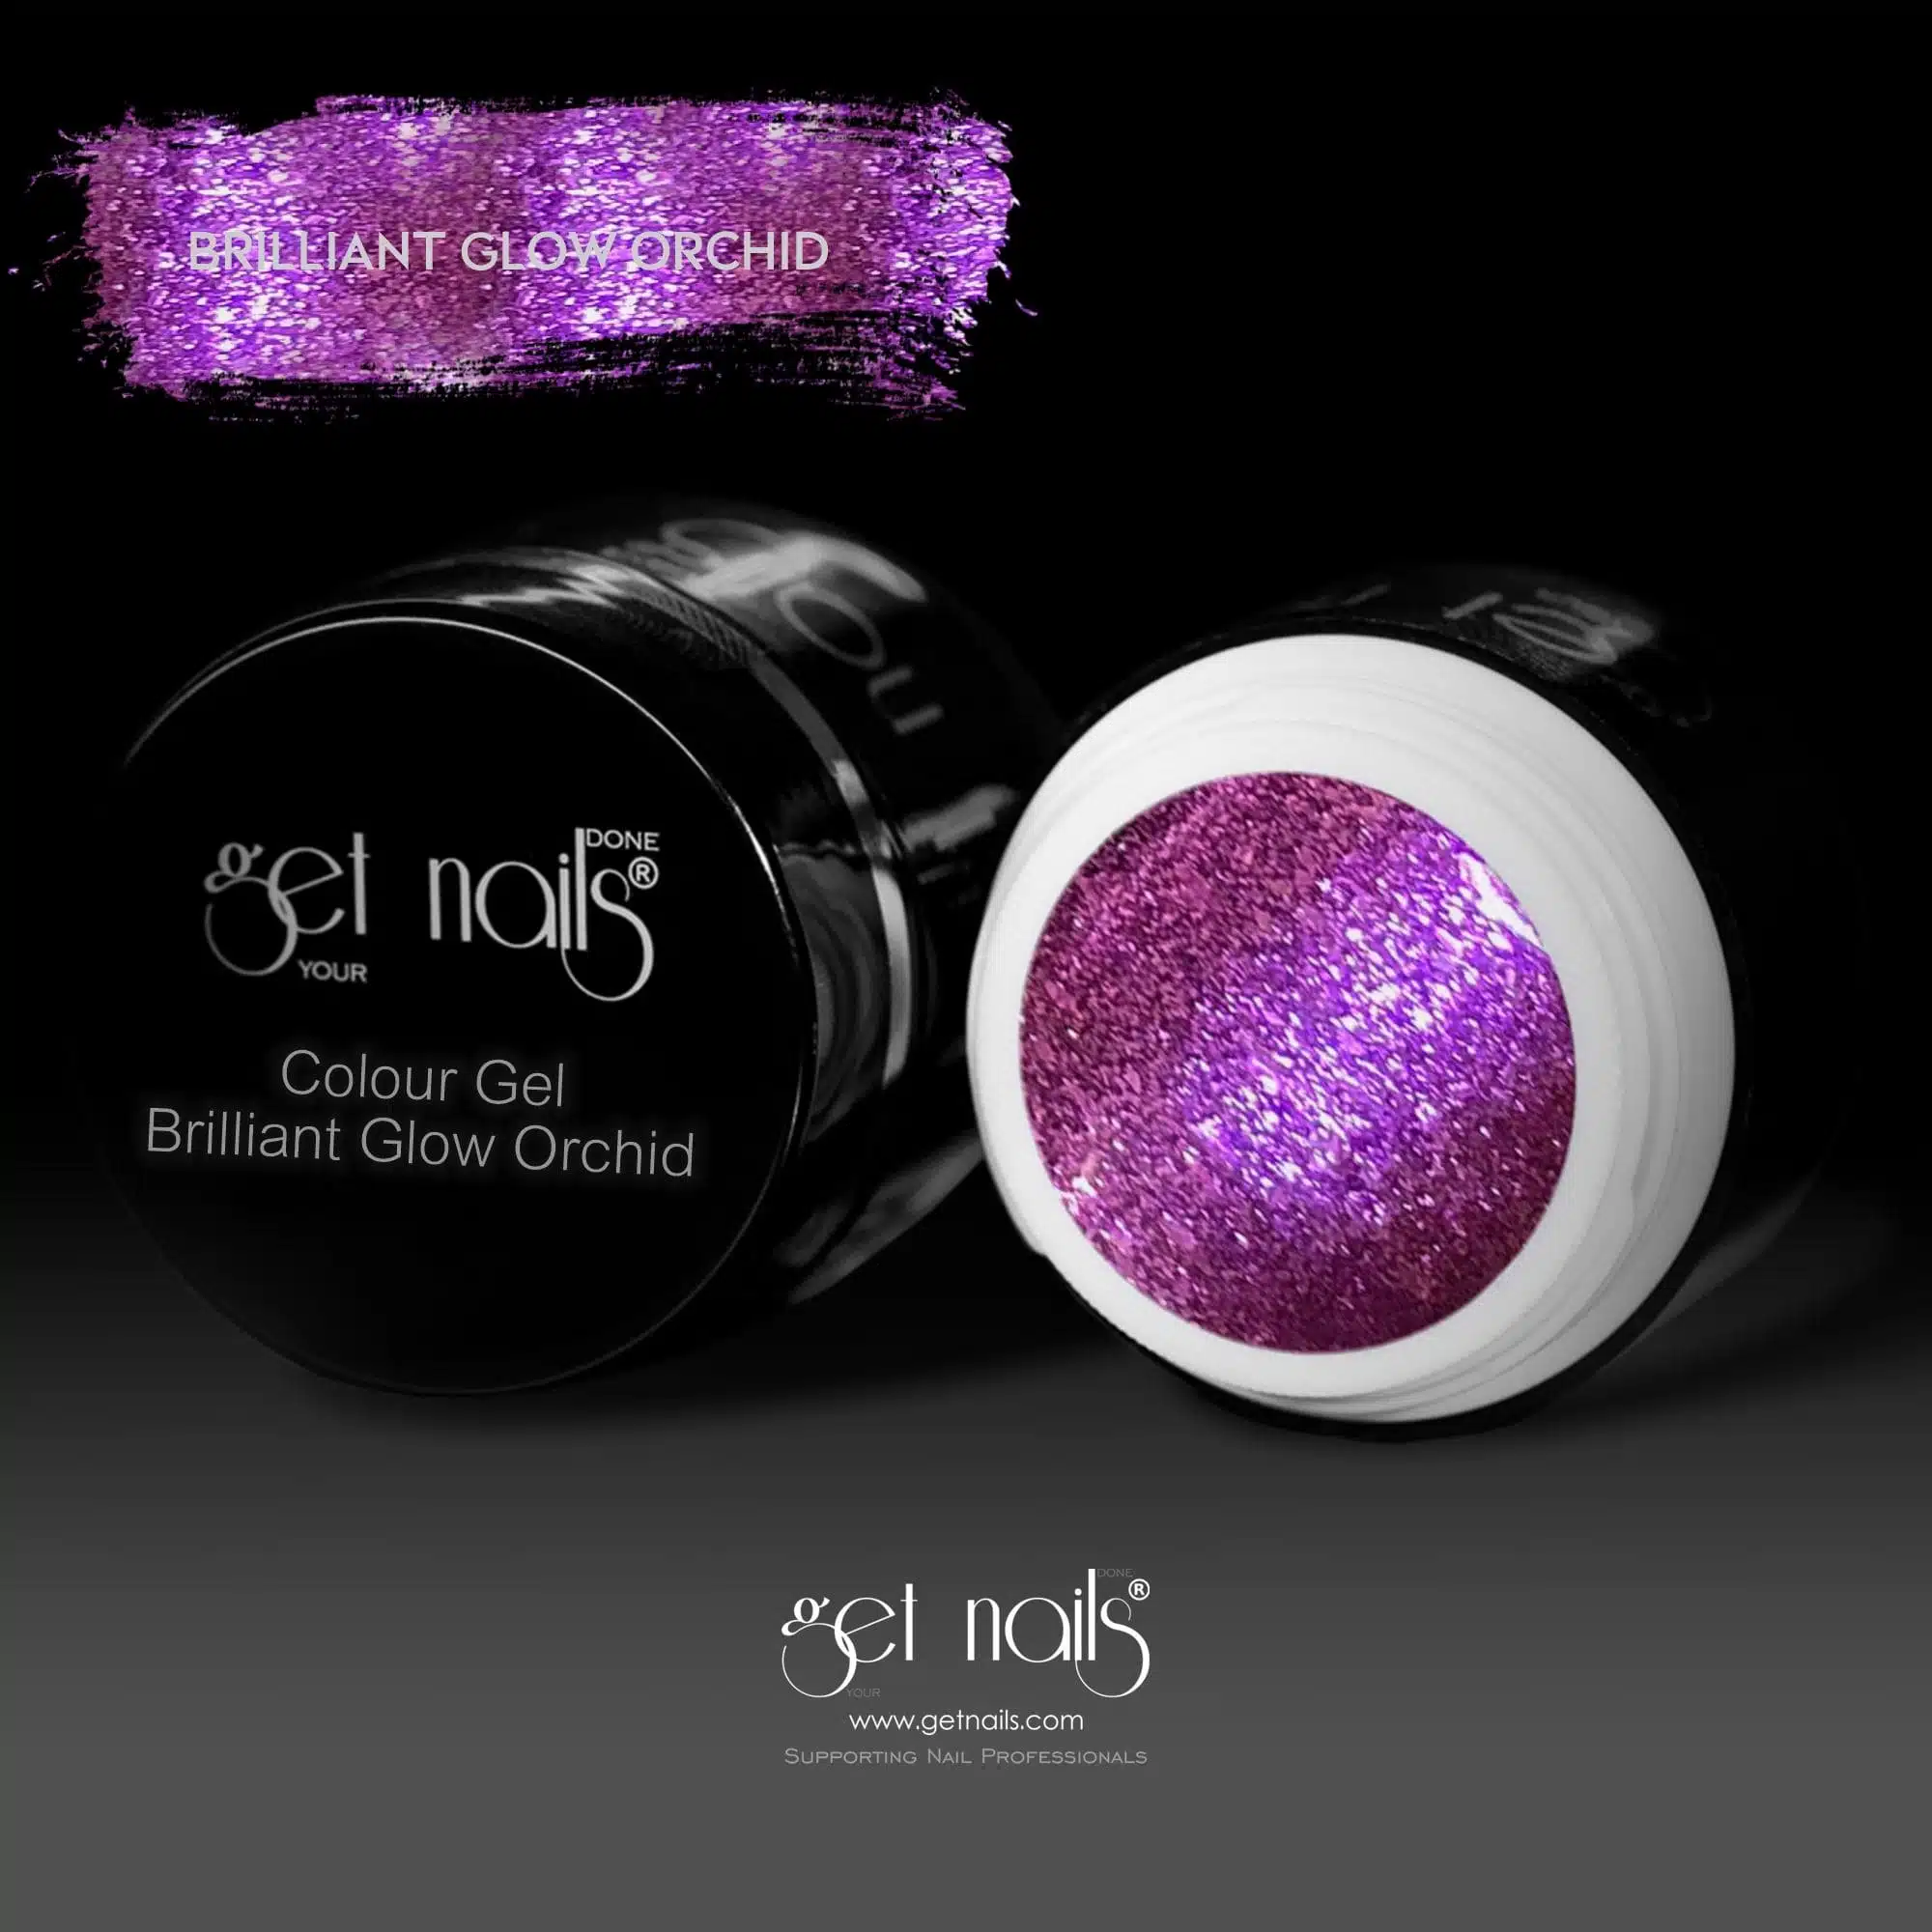 Get Nails Austria - Colour Gel Brilliant Glow Orchid 5g